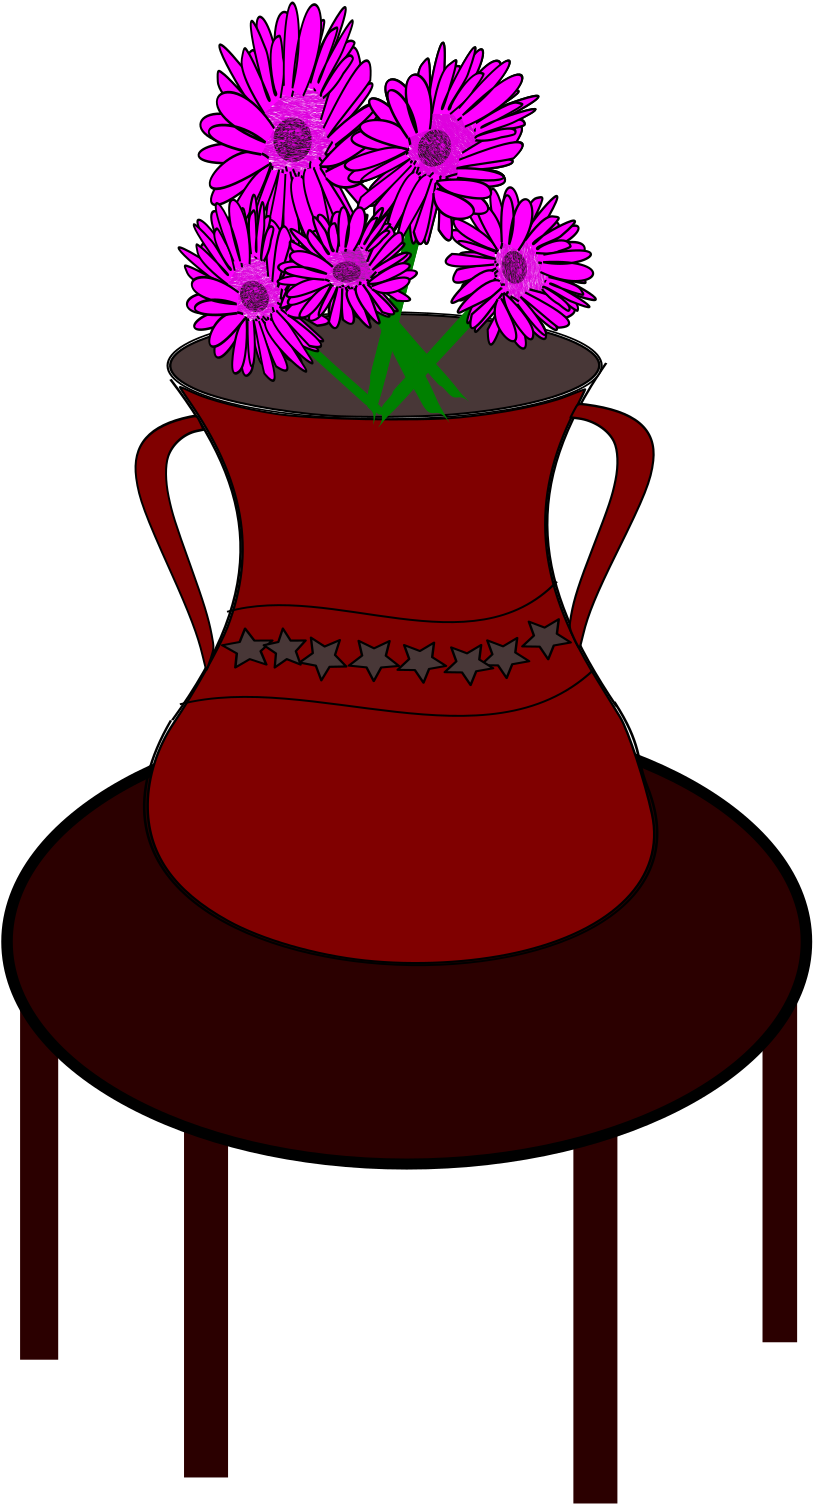 Flower Vase - Vase On Table Clipart (2400x1600)